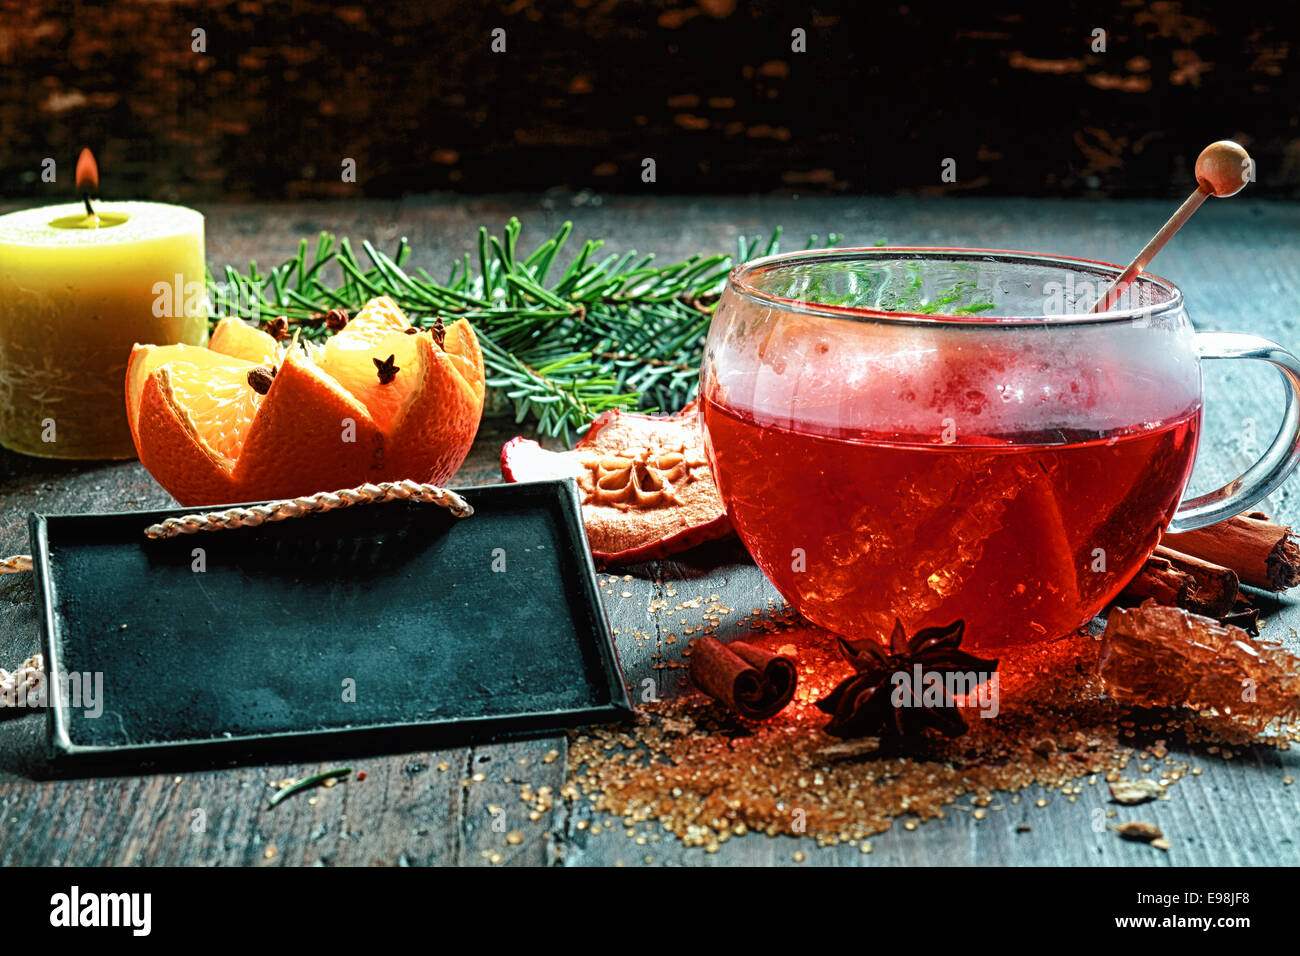 Heiligabend gewürzt, heißen Tee oder Glühwein mit kristallisierter Zucker, eine dekorative Orange und Gewürze neben einer brennenden Kerze und Stockfoto